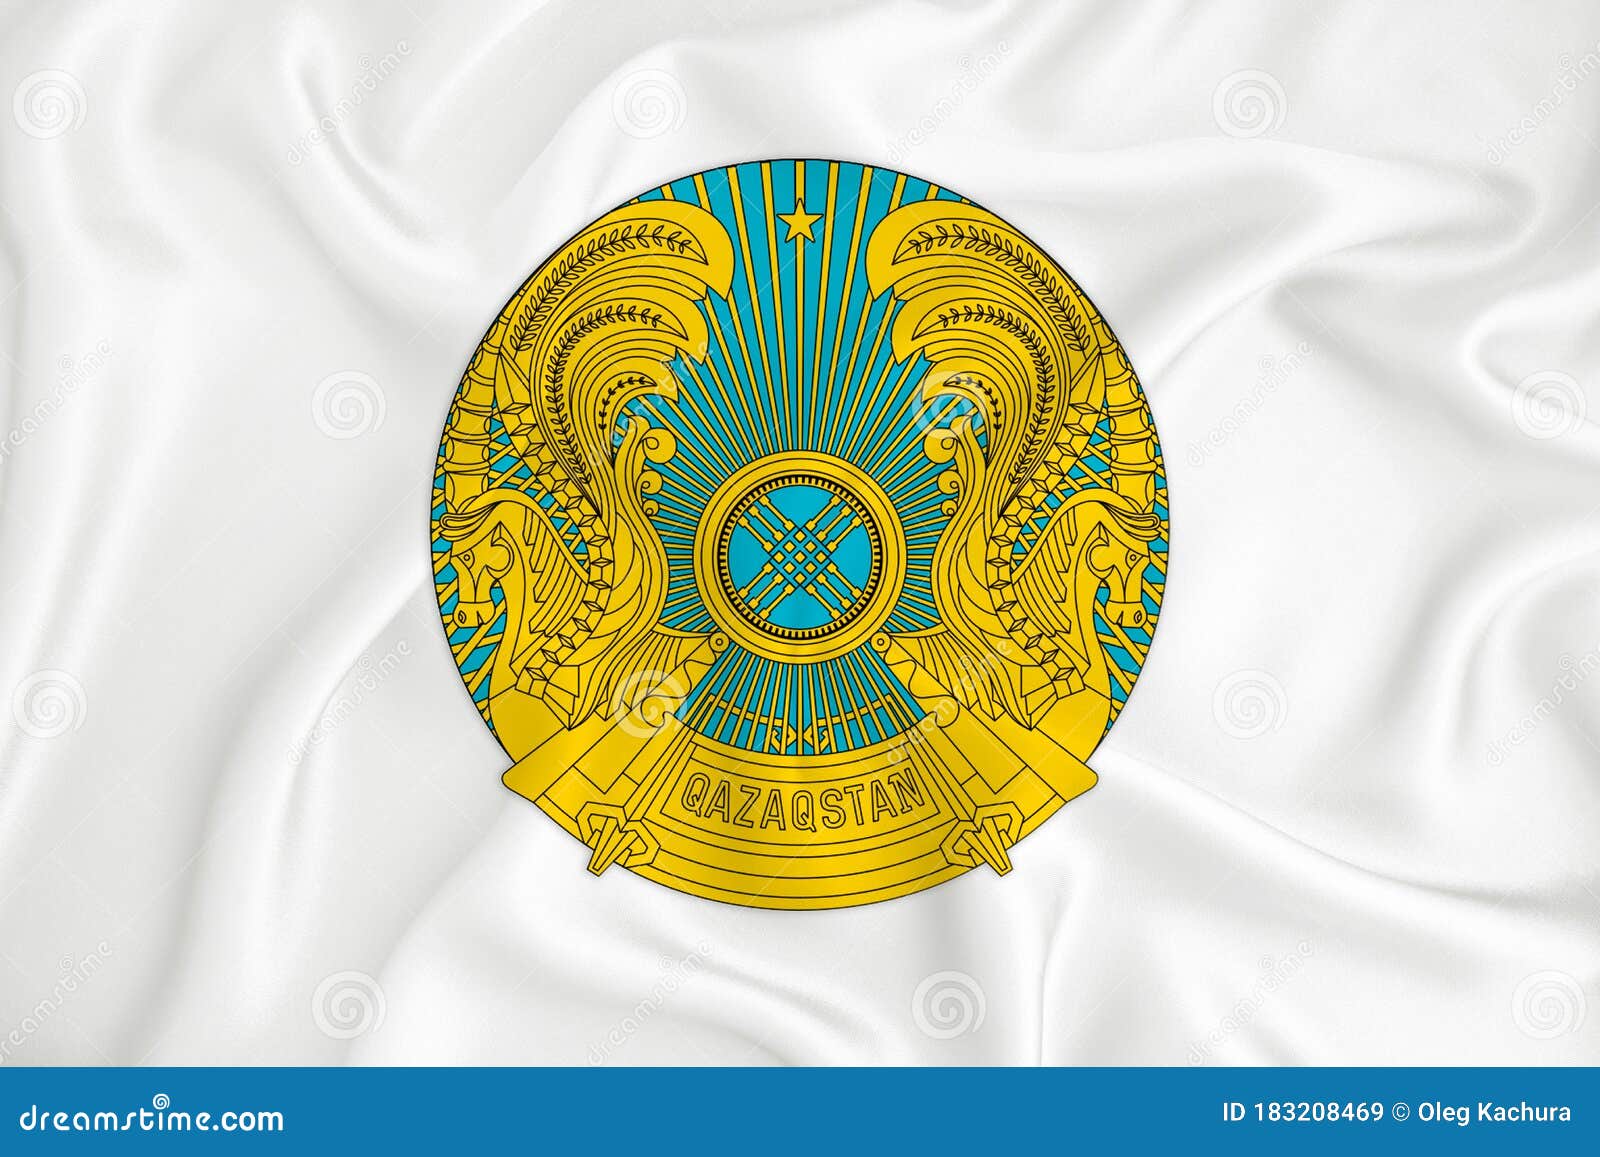 Смена герба в казахстане